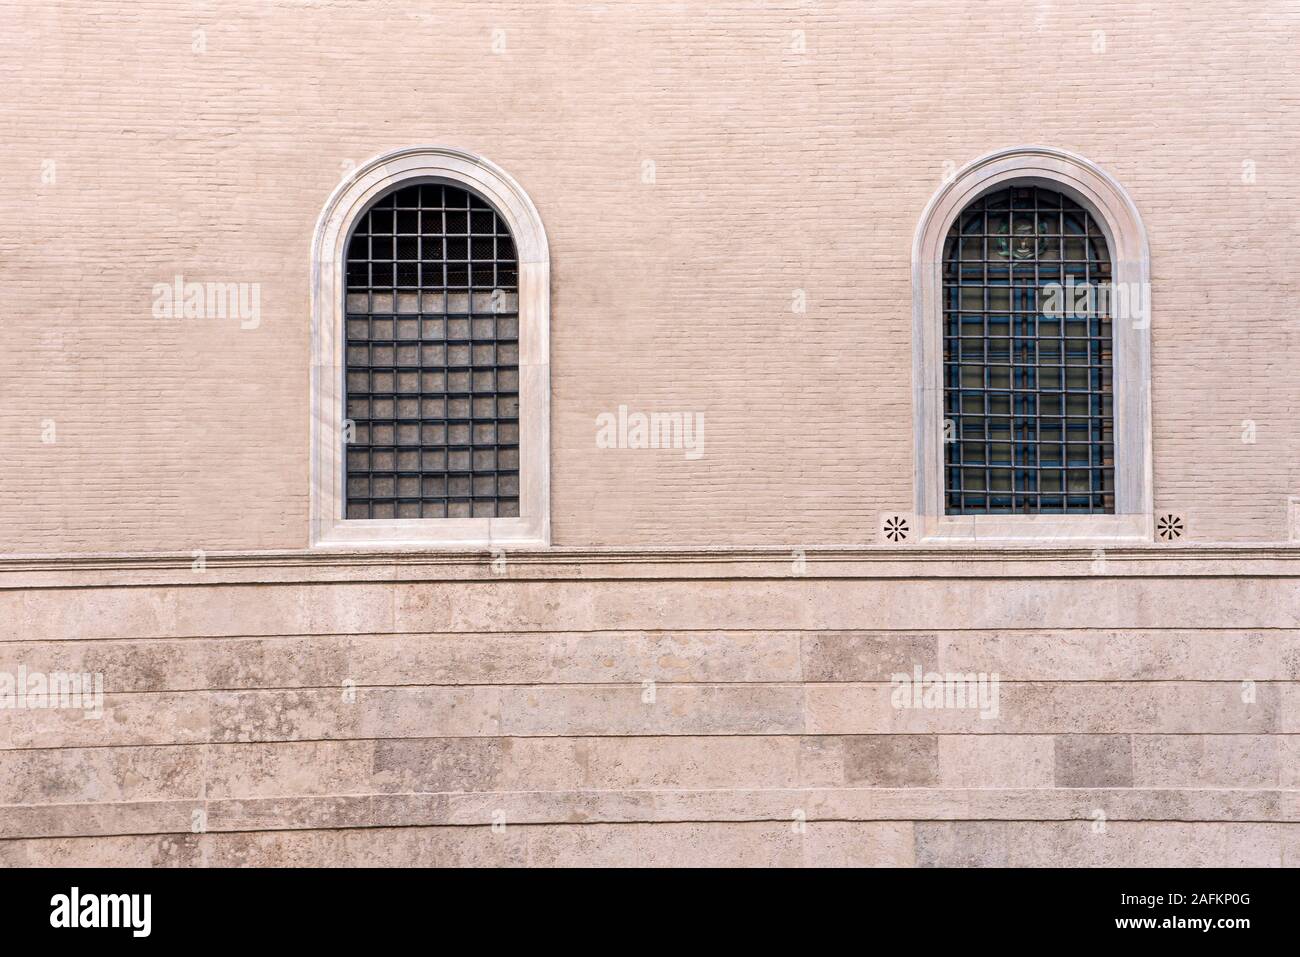 Italia Lazio Roma - Palazzo della Cancelleria - restaurato - Italia Lazio Roma - Palazzo della Cancelleria - ripristinato - Lato Corso Vittorio Foto Stock